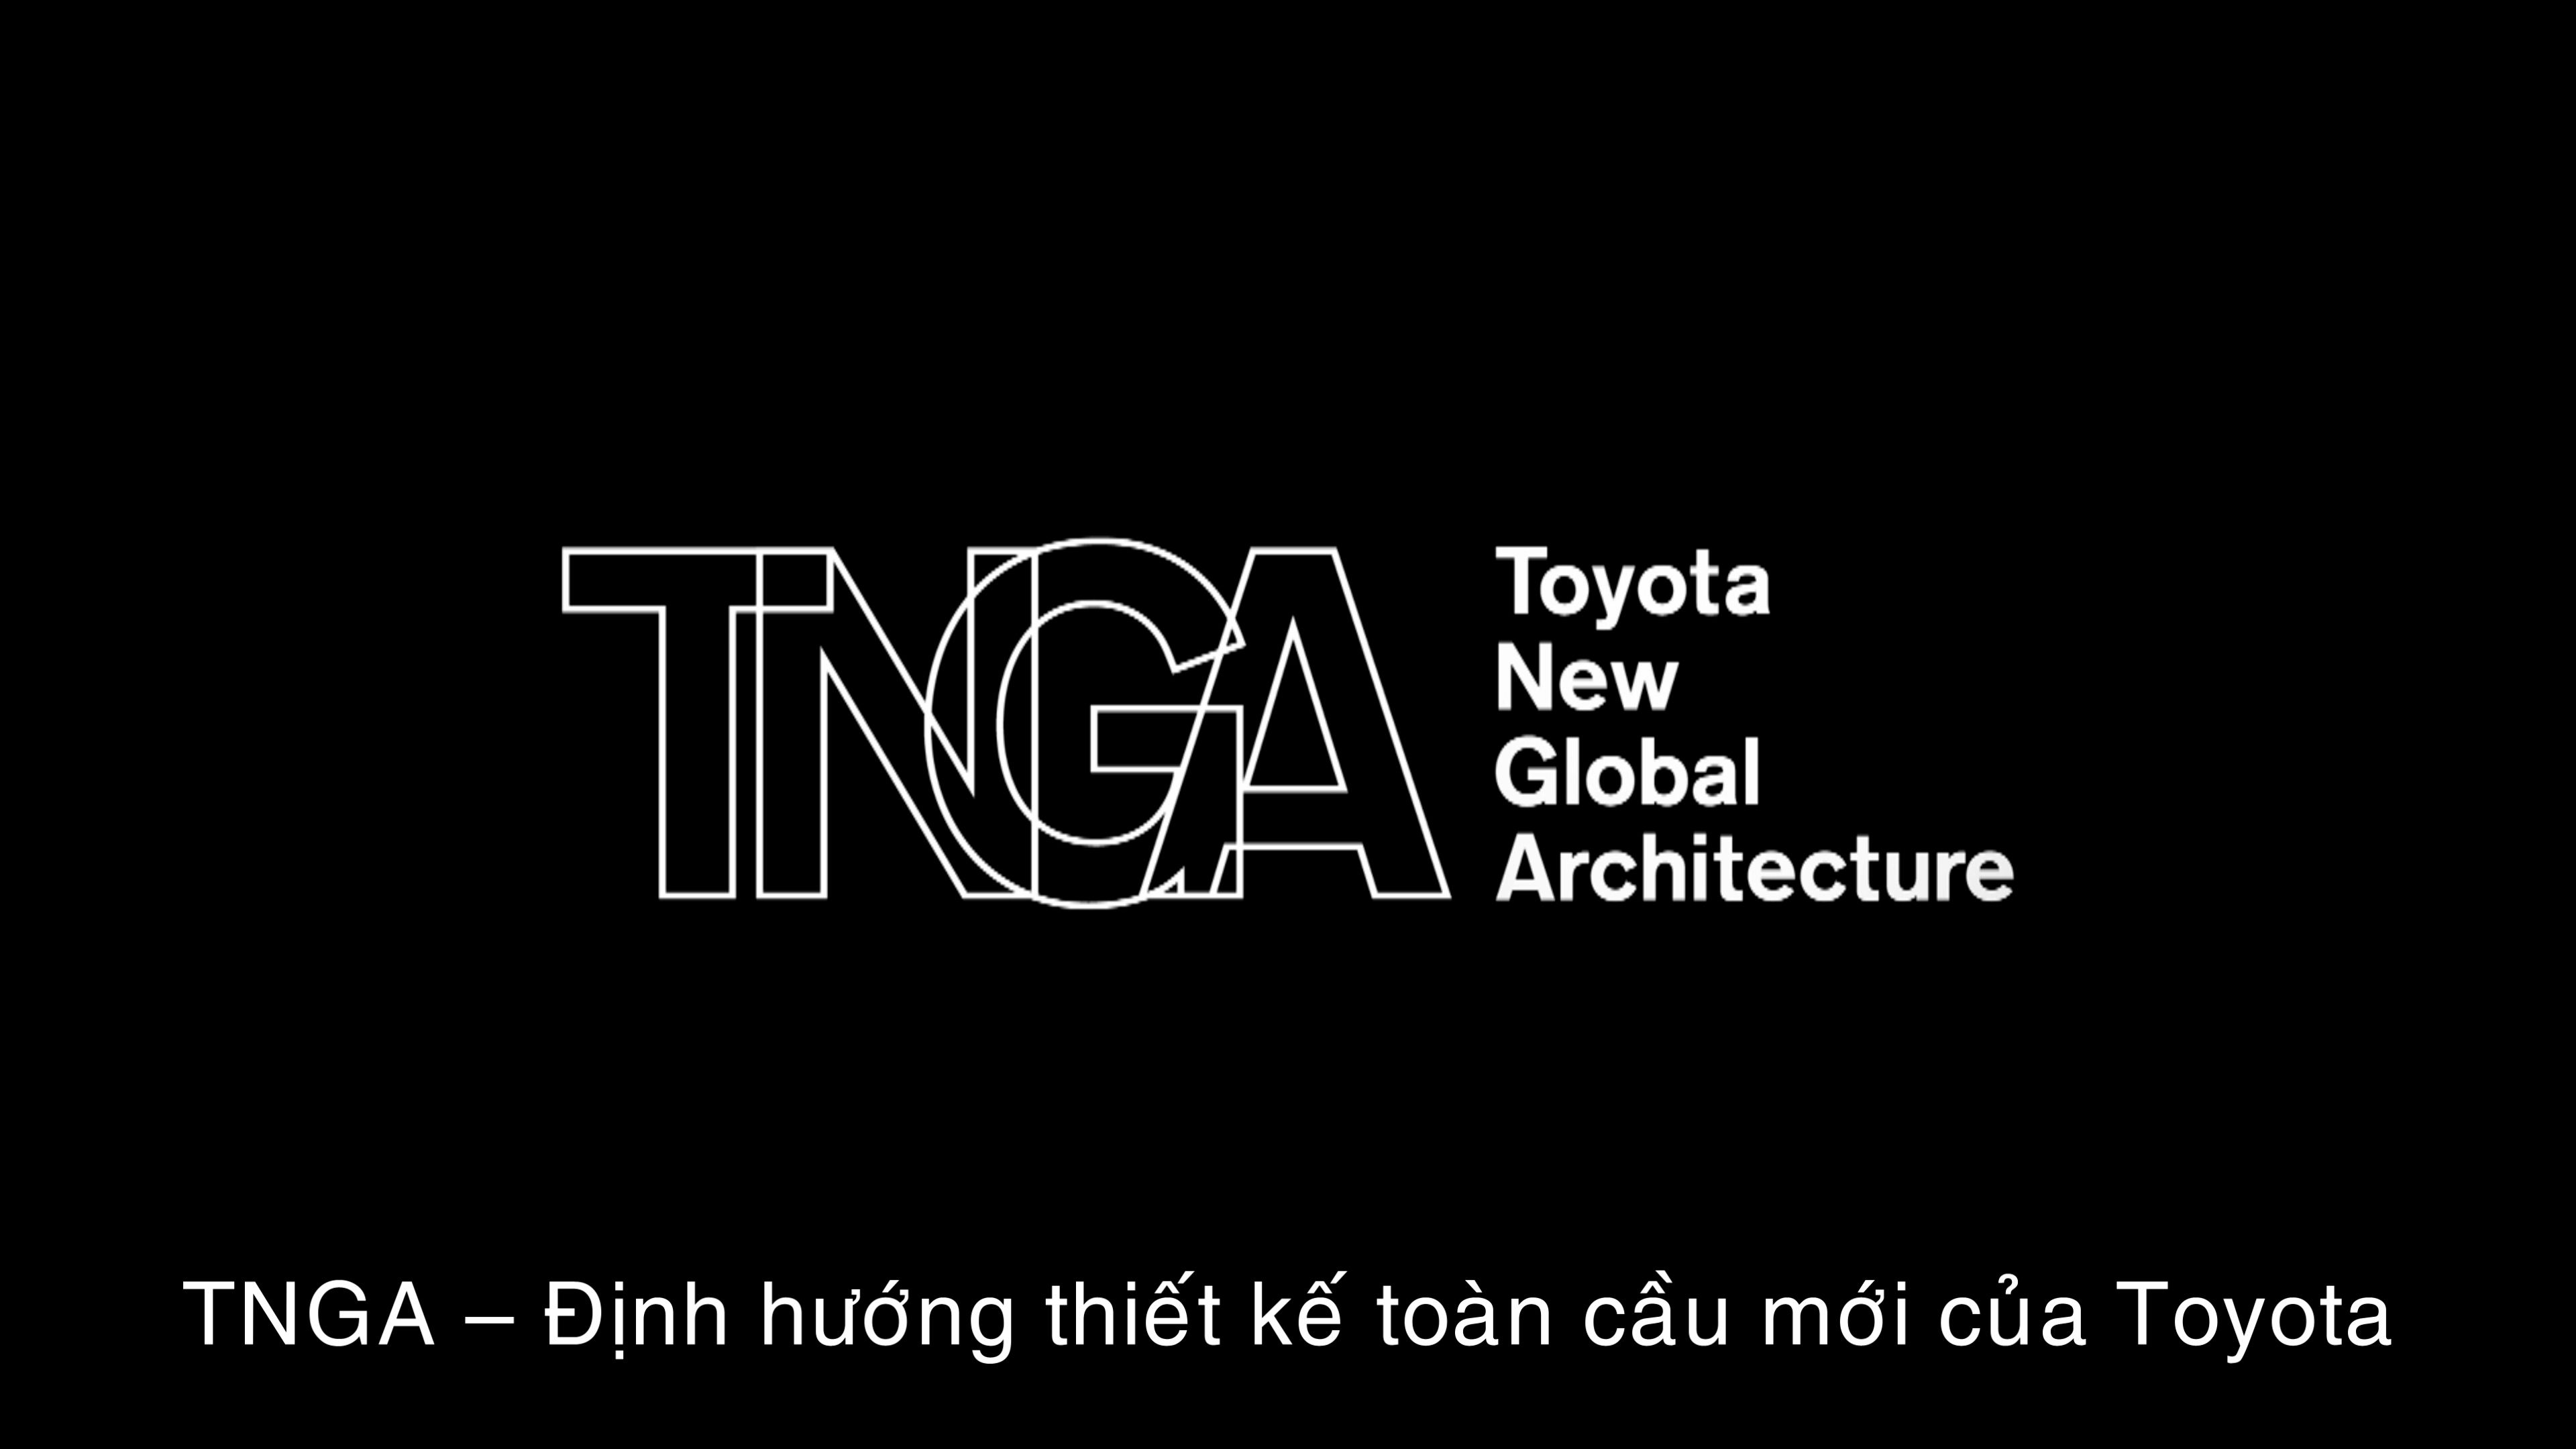 TNGA - Định hướng thiết kế toàn cầu mới của Toyota